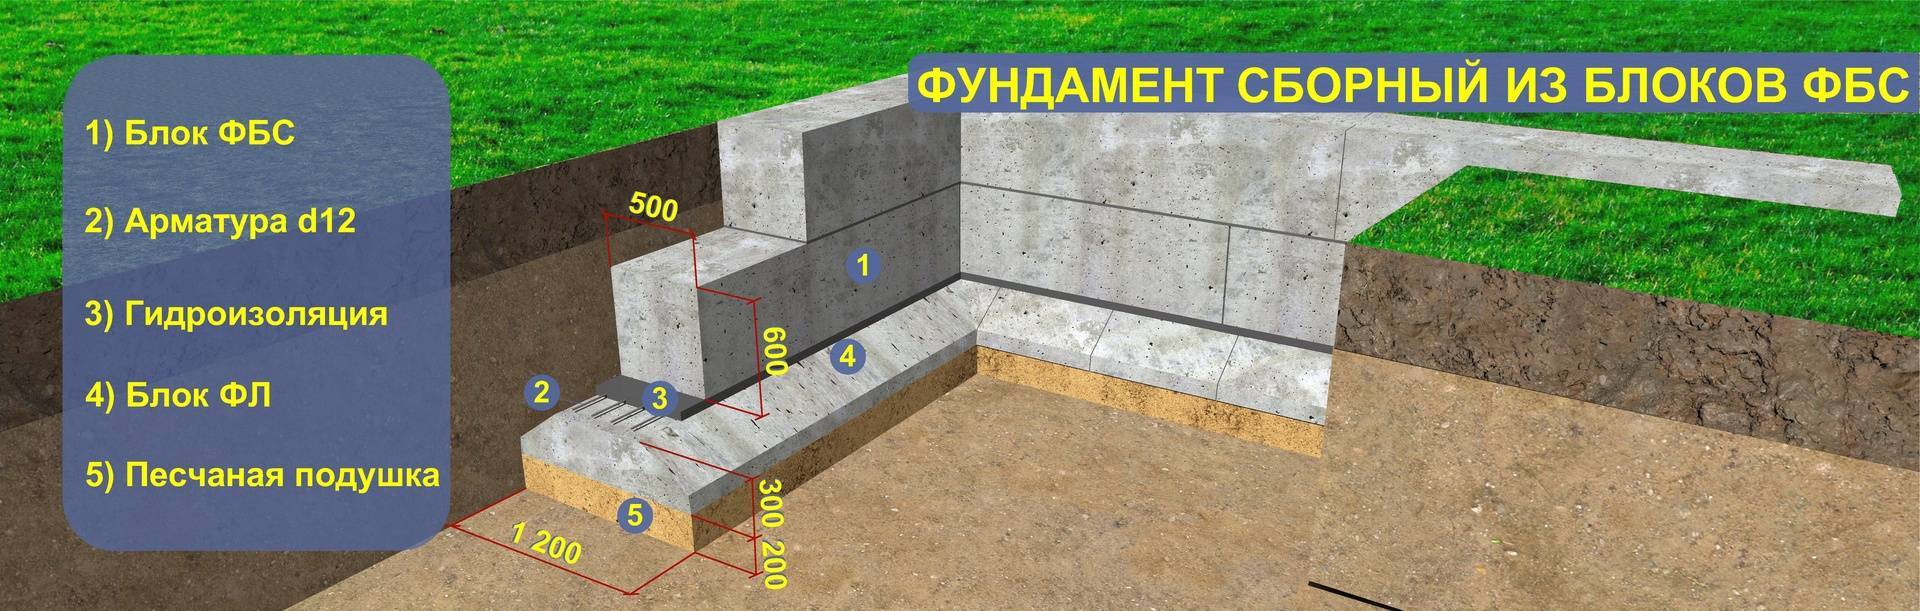 Какой фундамент для дома лучше - ленточный или плитный? дон бетон